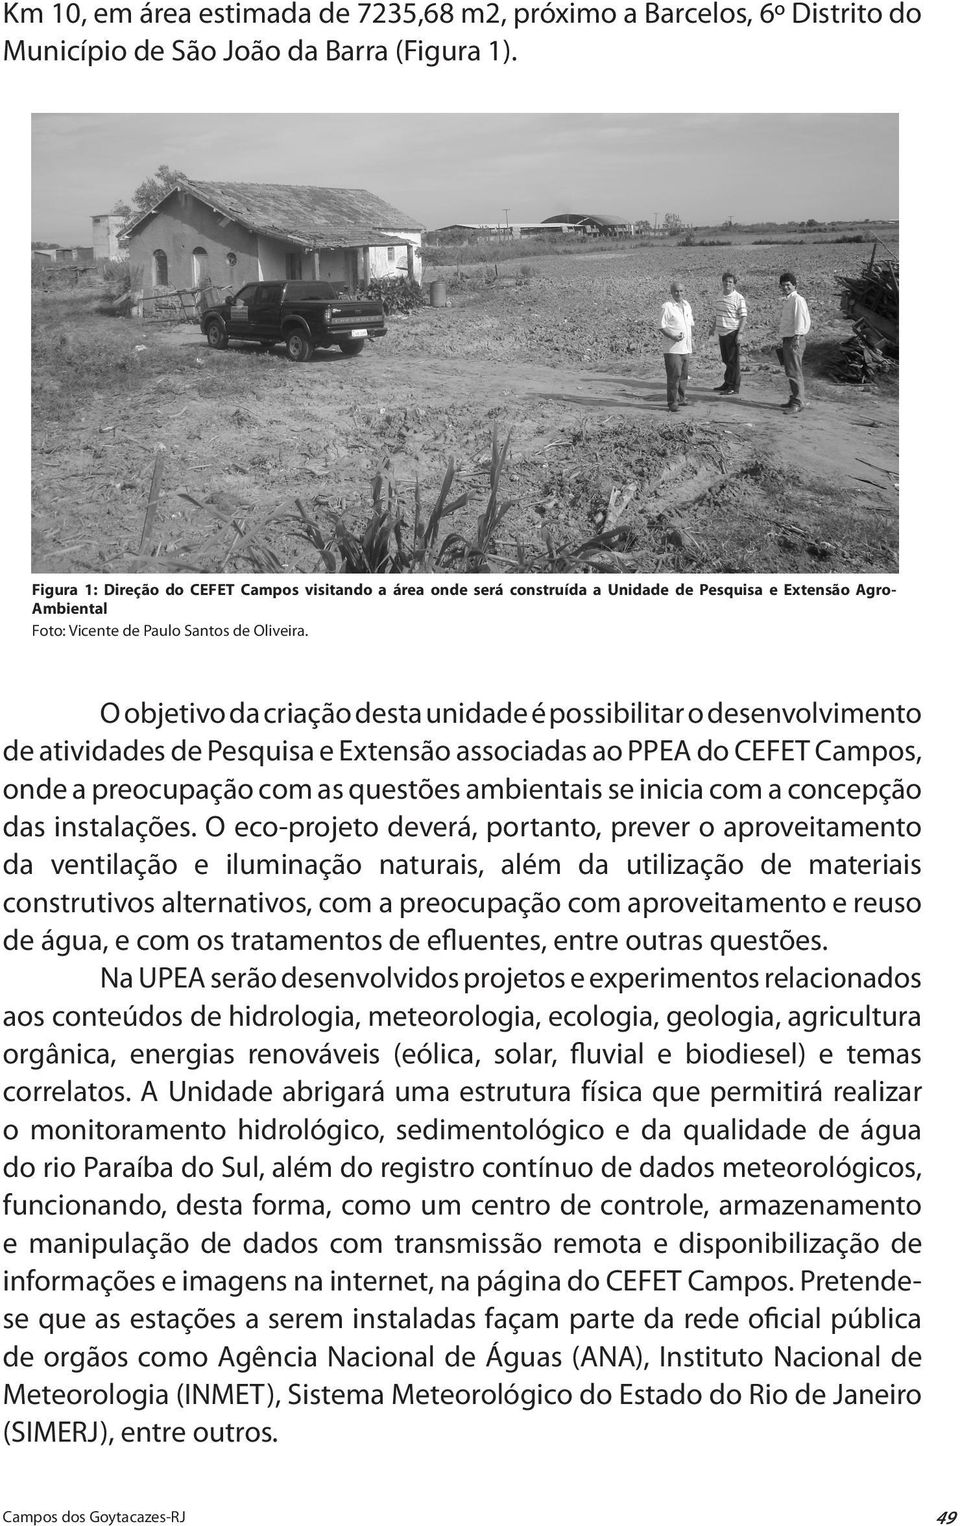 O objetivo da criação desta unidade é possibilitar o desenvolvimento de atividades de Pesquisa e Extensão associadas ao PPEA do CEFET Campos, onde a preocupação com as questões ambientais se inicia